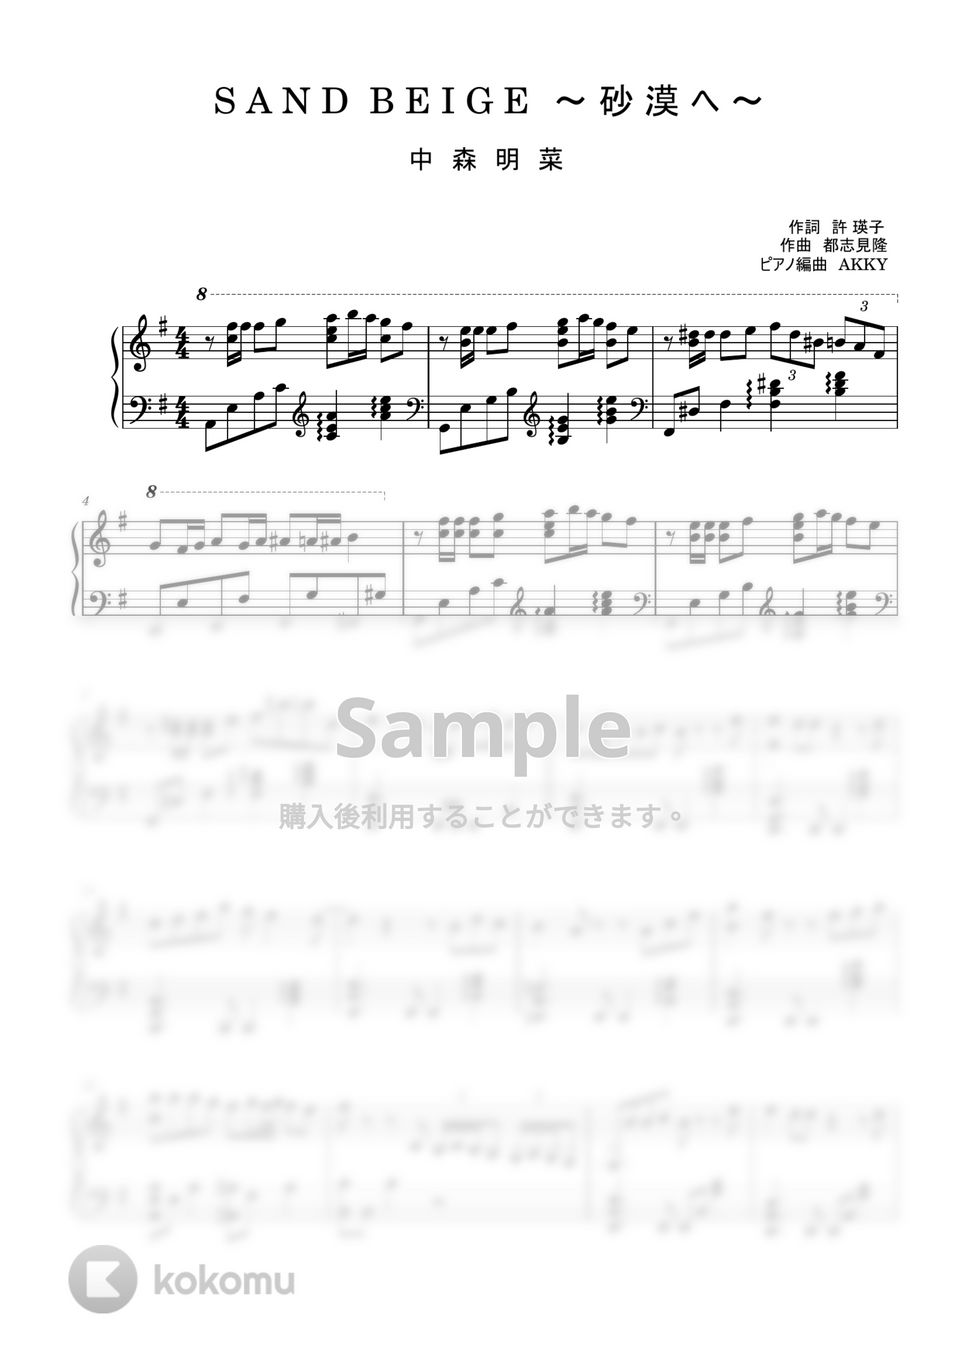 中森明菜 - SAND BEIGE (ピアノソロ /) by AKKY